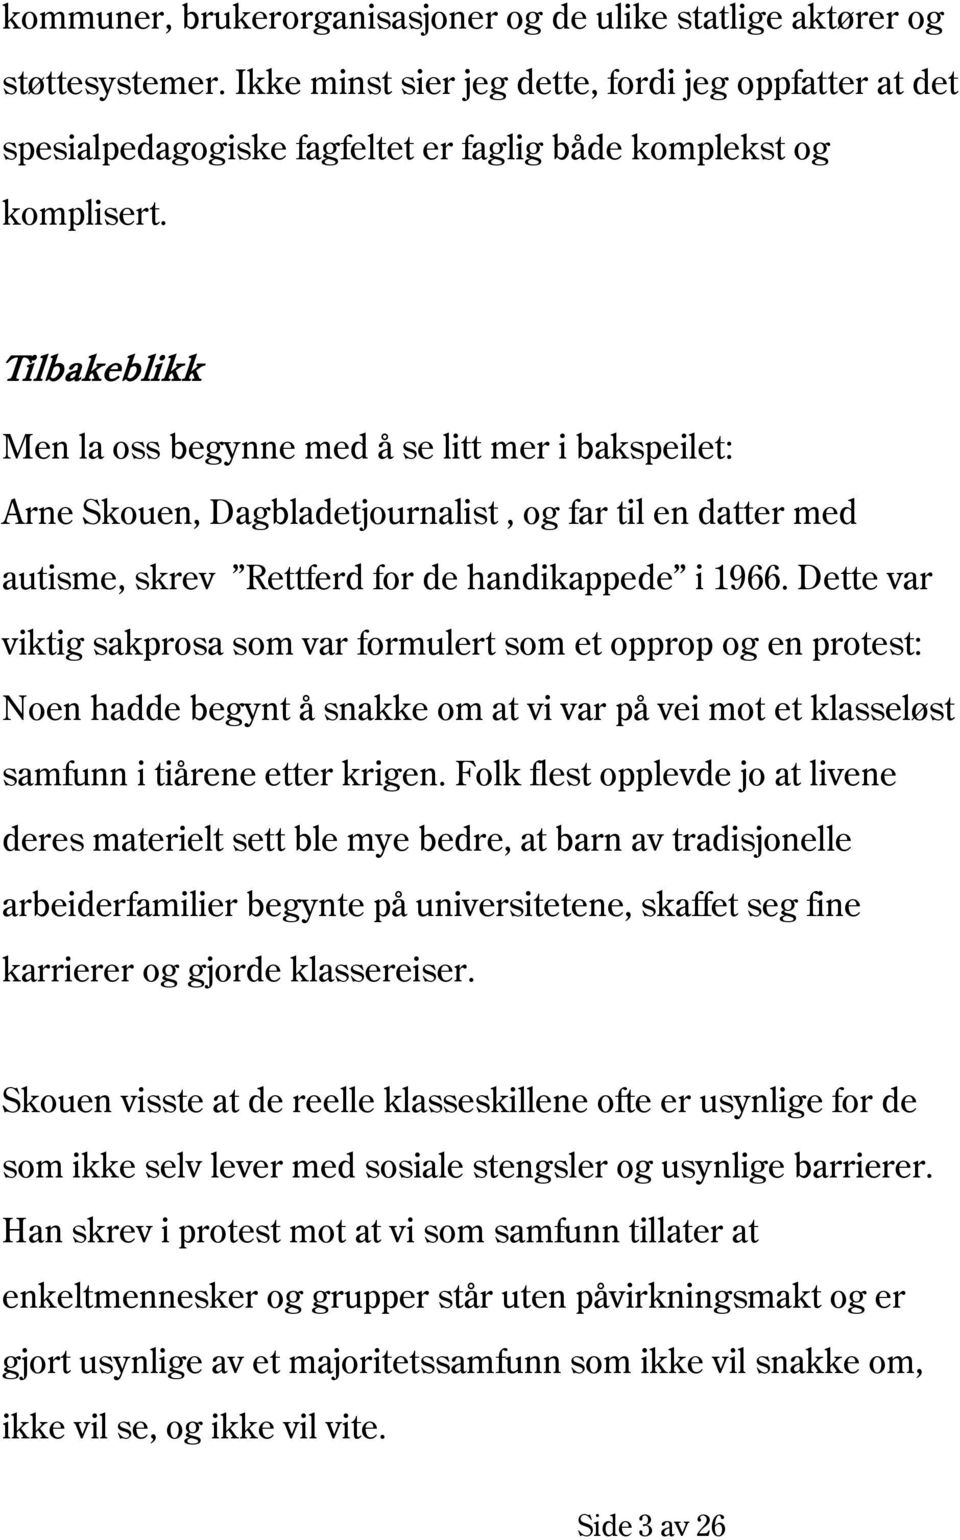 Tilbakeblikk Men la oss begynne med å se litt mer i bakspeilet: Arne Skouen, Dagbladetjournalist, og far til en datter med autisme, skrev Rettferd for de handikappede i 1966.